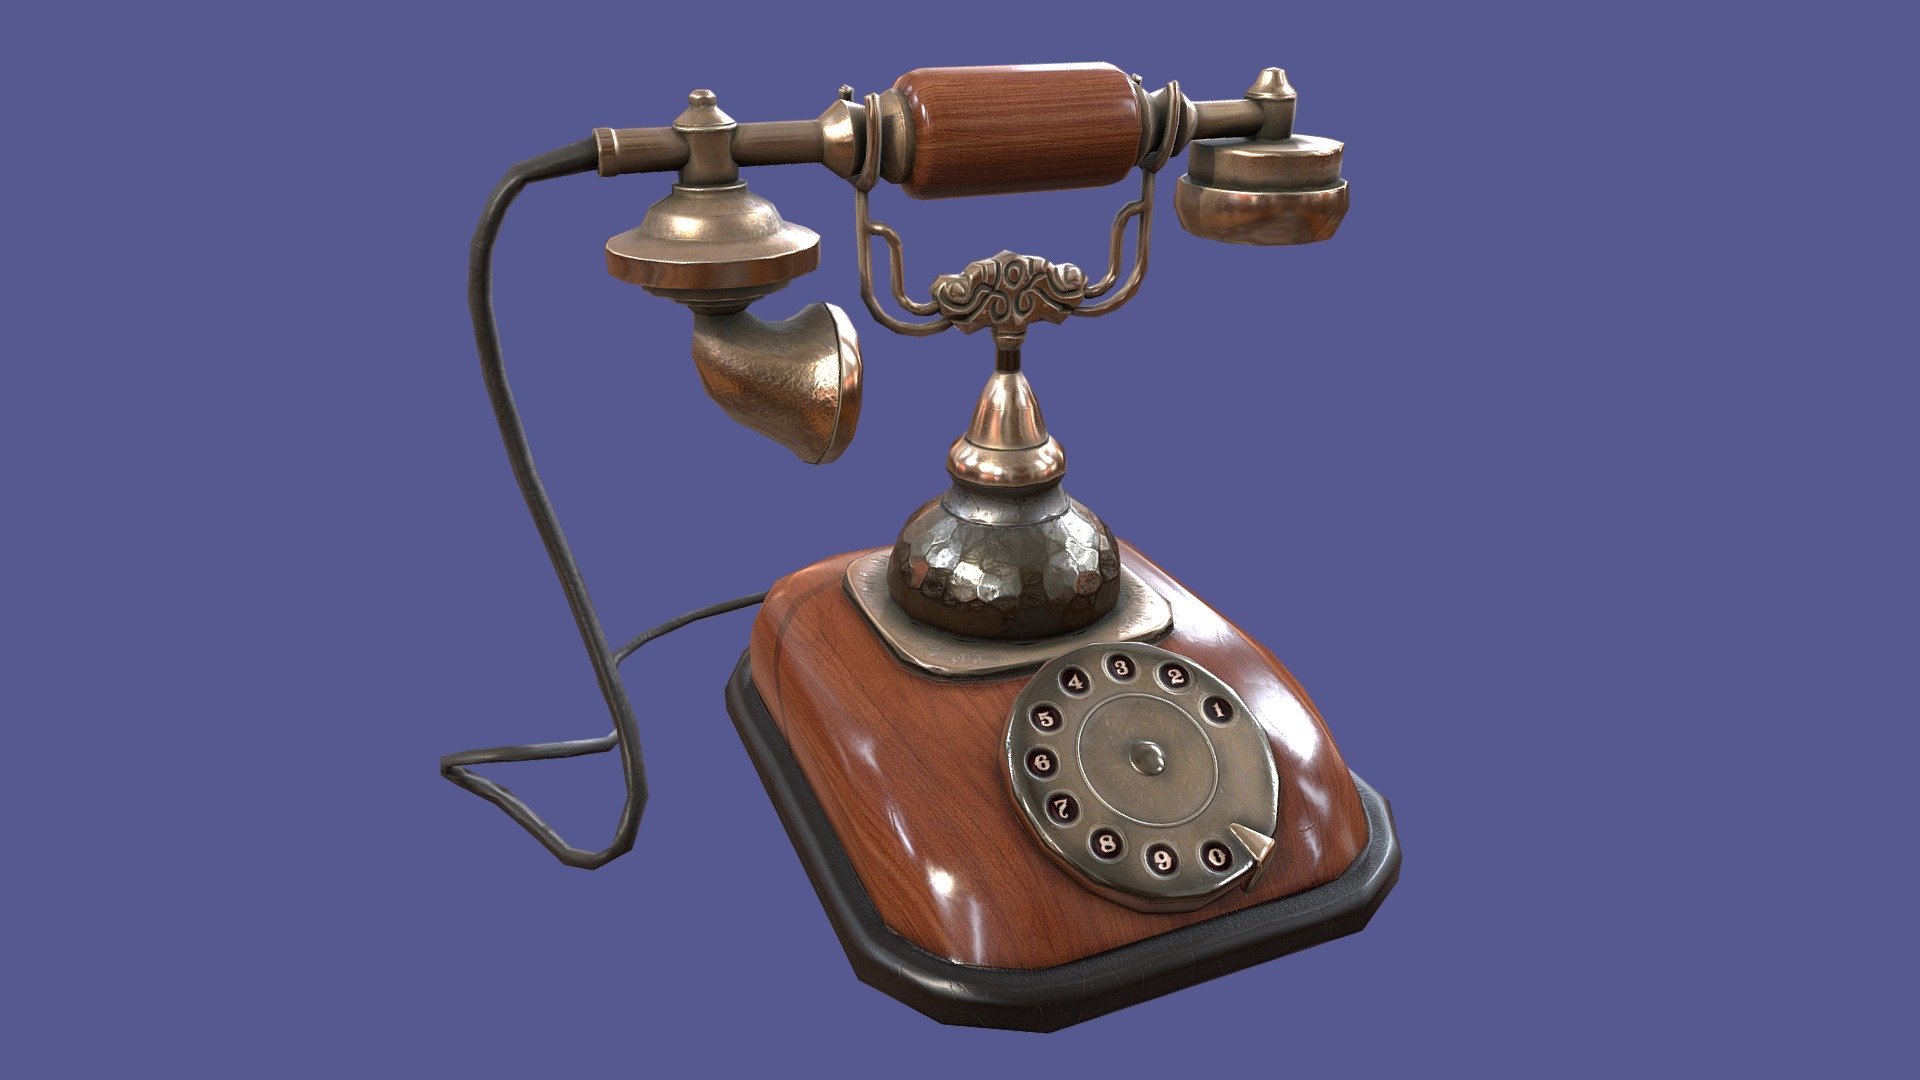 Antique Retro Phone